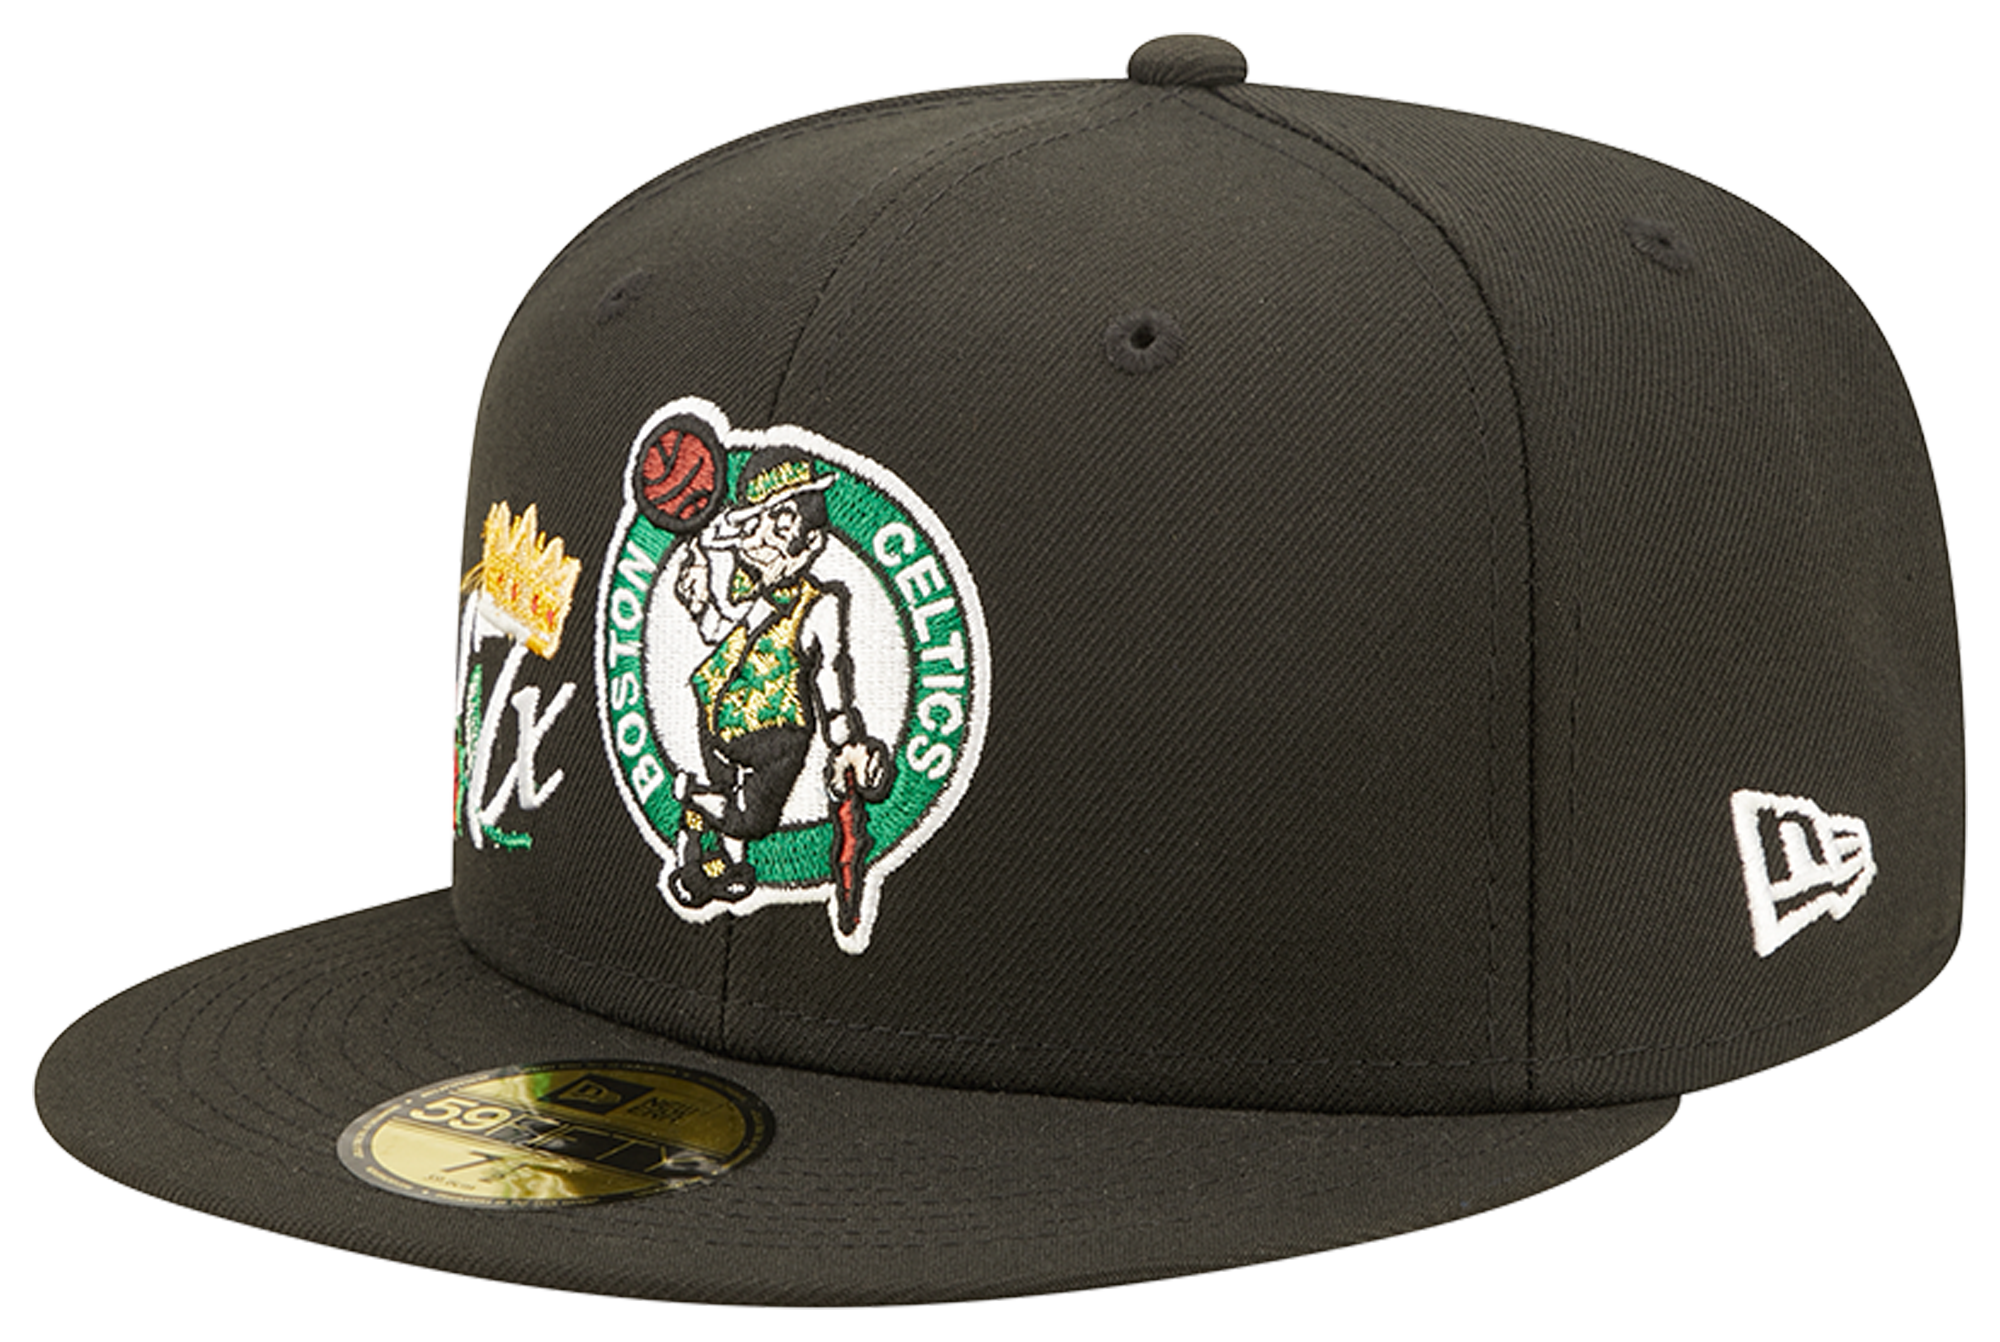 New Era Celtics 59FIFTY Crown Champs Cap - Men's